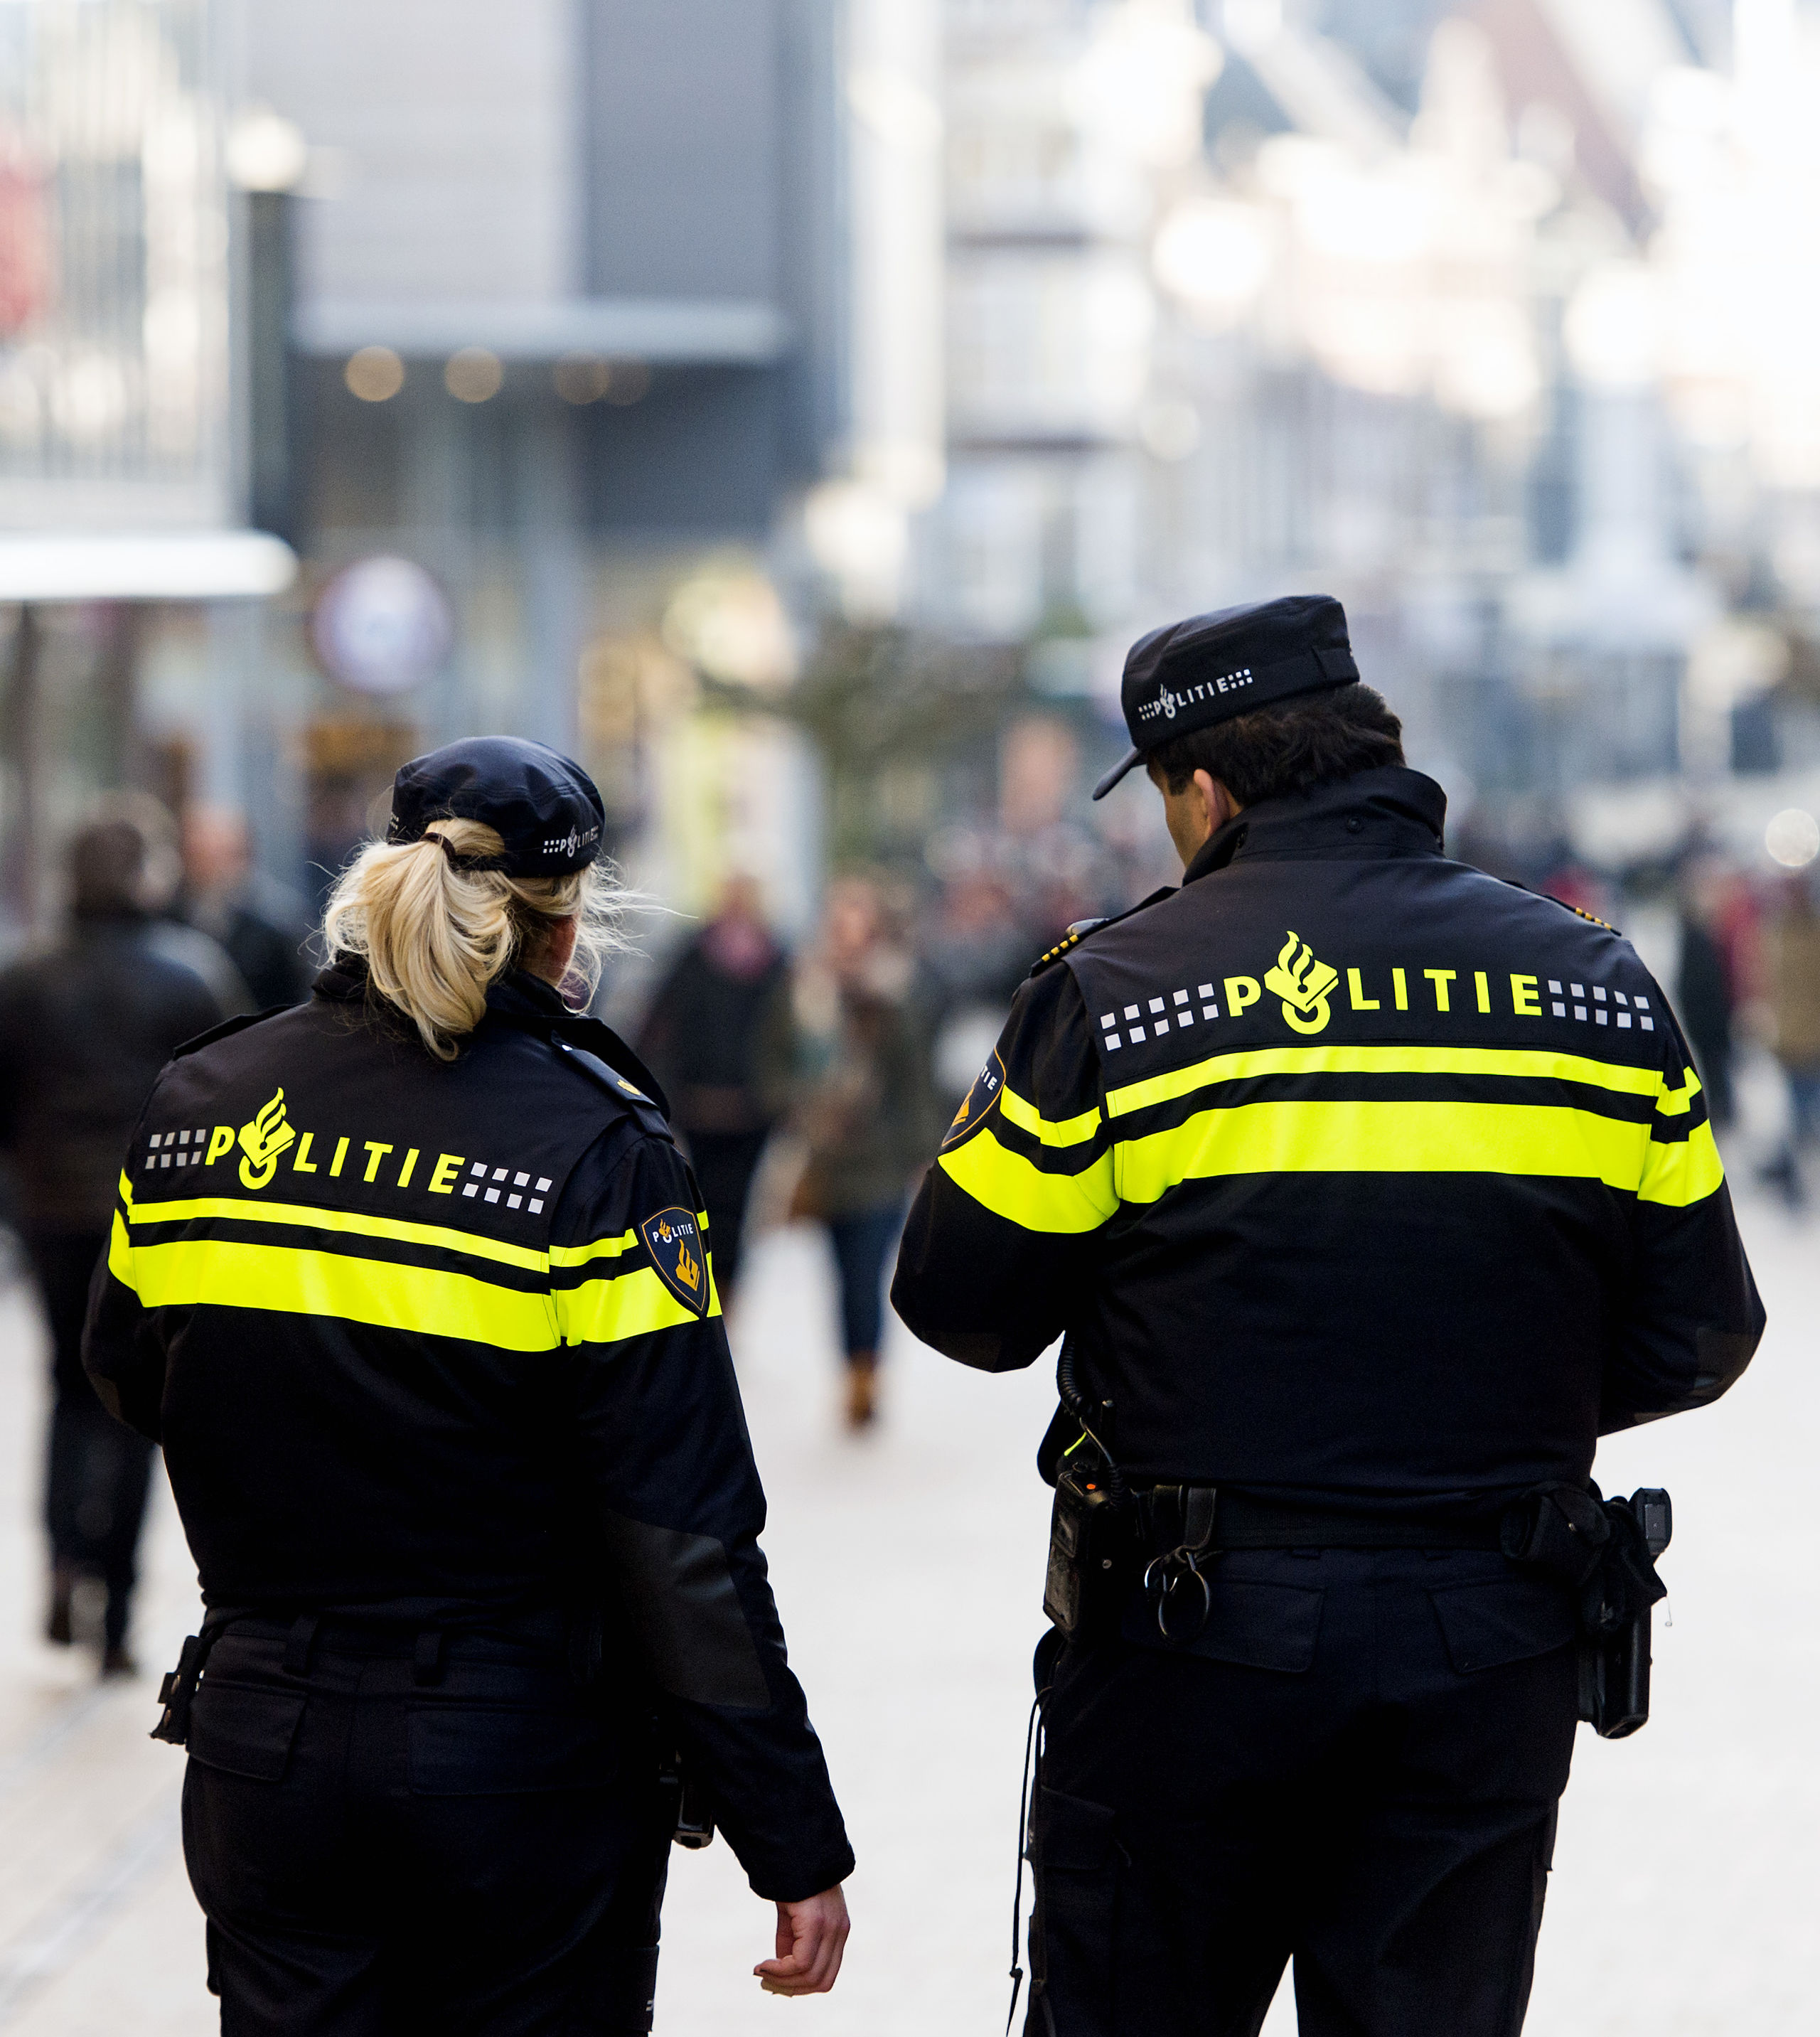 Politieagenten in operationeel uniform op straat. Politie, surveilleren, patrouille, winkelstraat, binnenstad. 